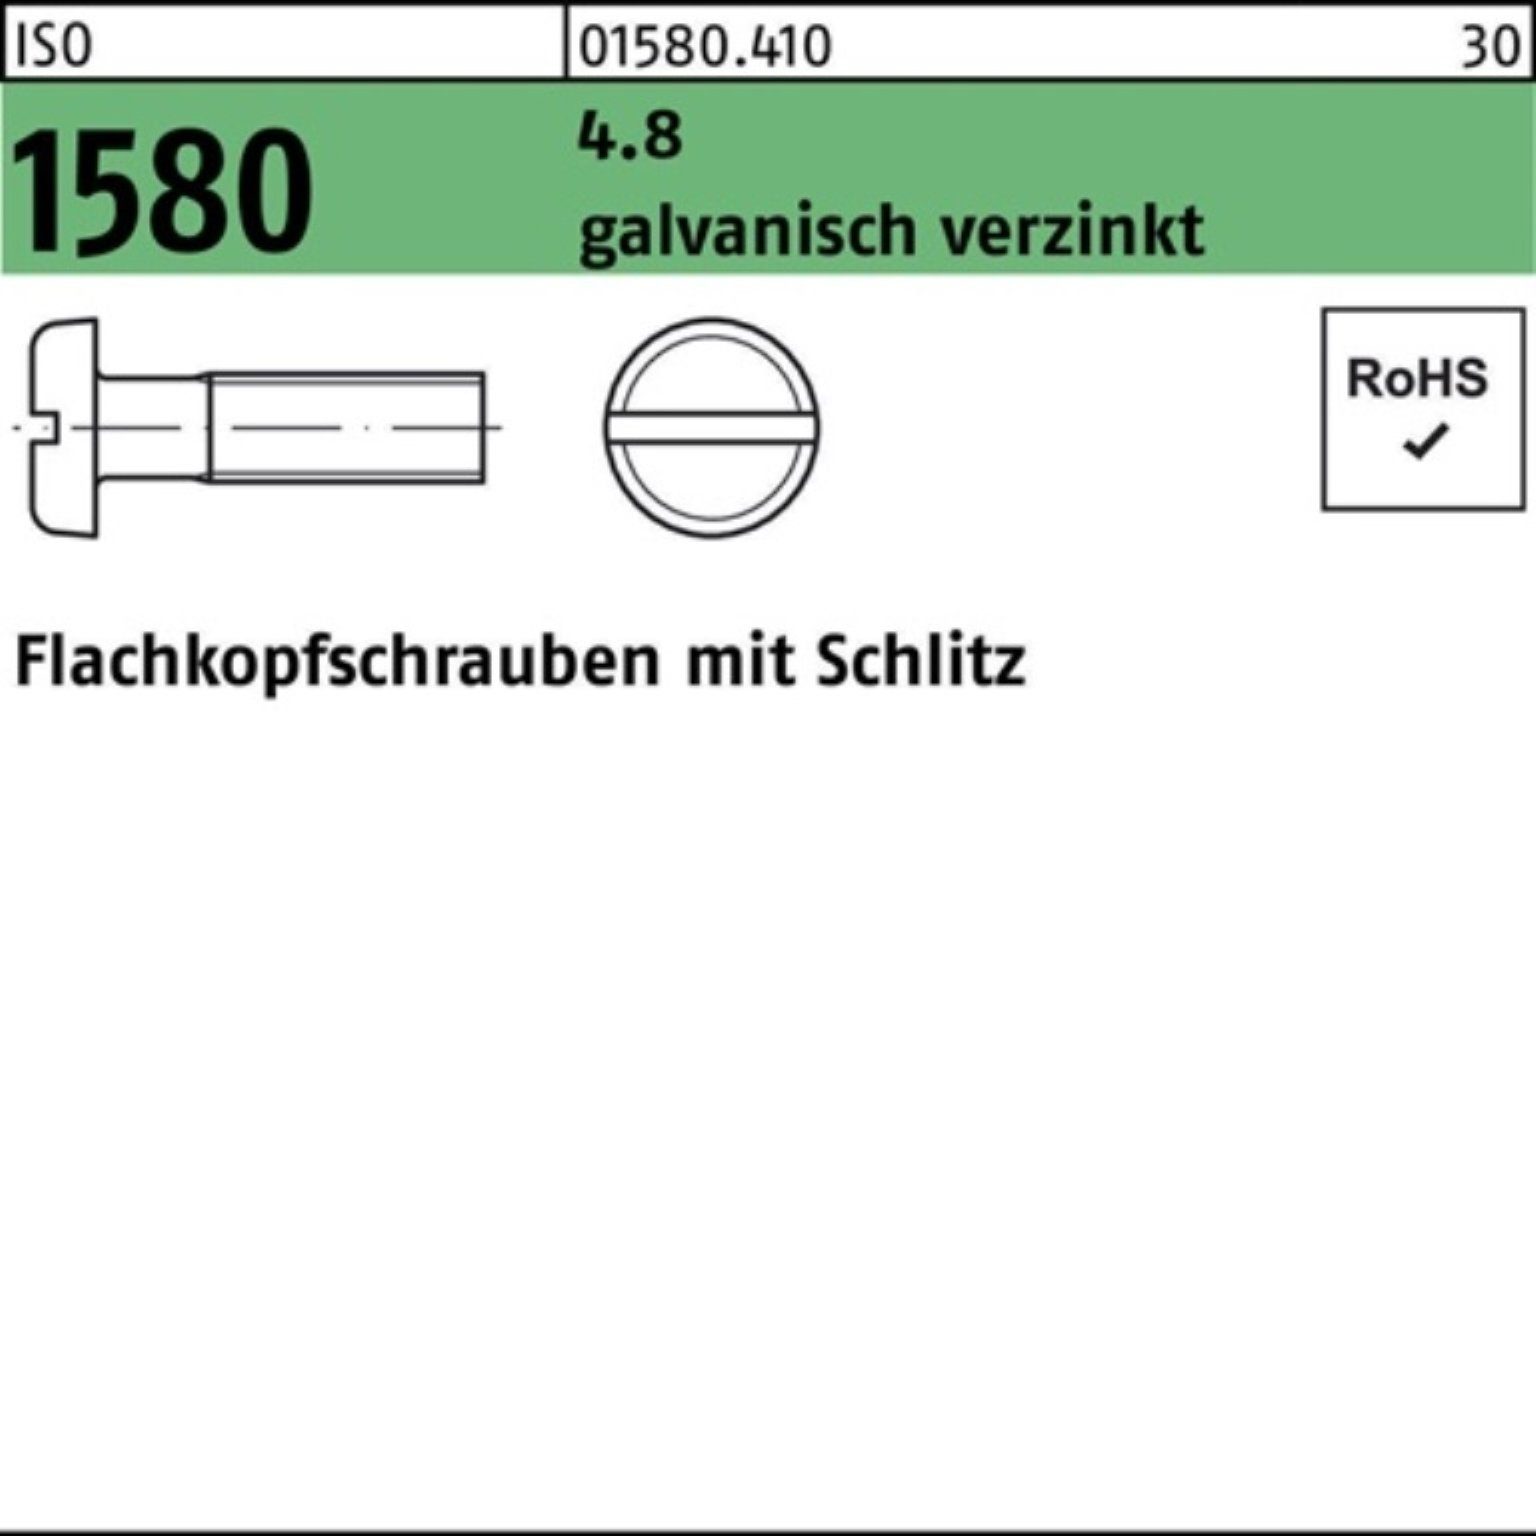 20 45 galv.verz. Schlitz Reyher Pack 4.8 Flachkopfschraube Schraube M6x ISO 200er 1580